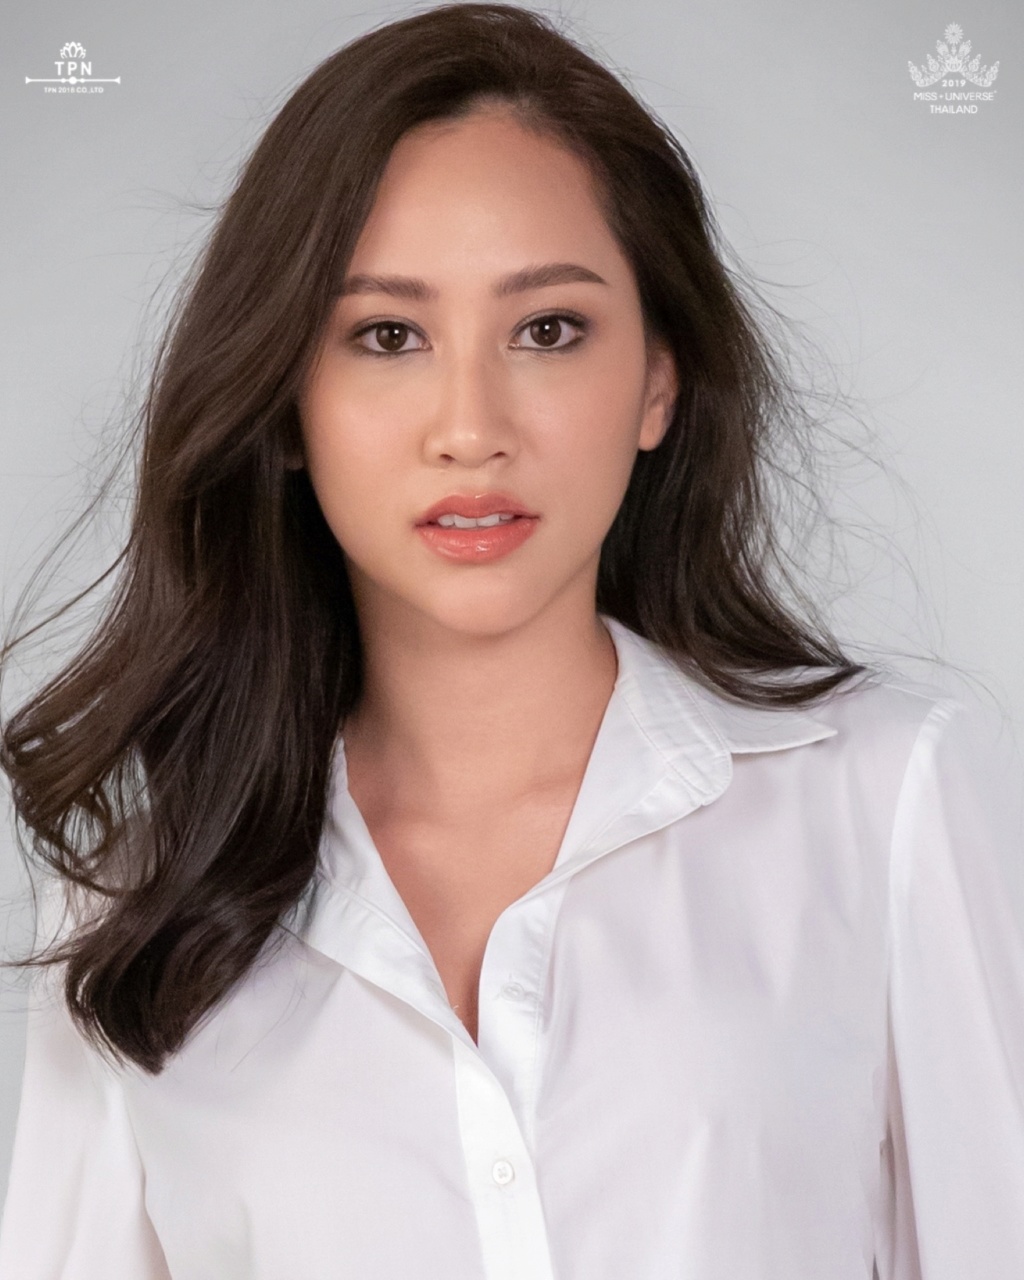 Miss Universe THAILAND 2019 - PORTRAITS!  - Page 2 4567